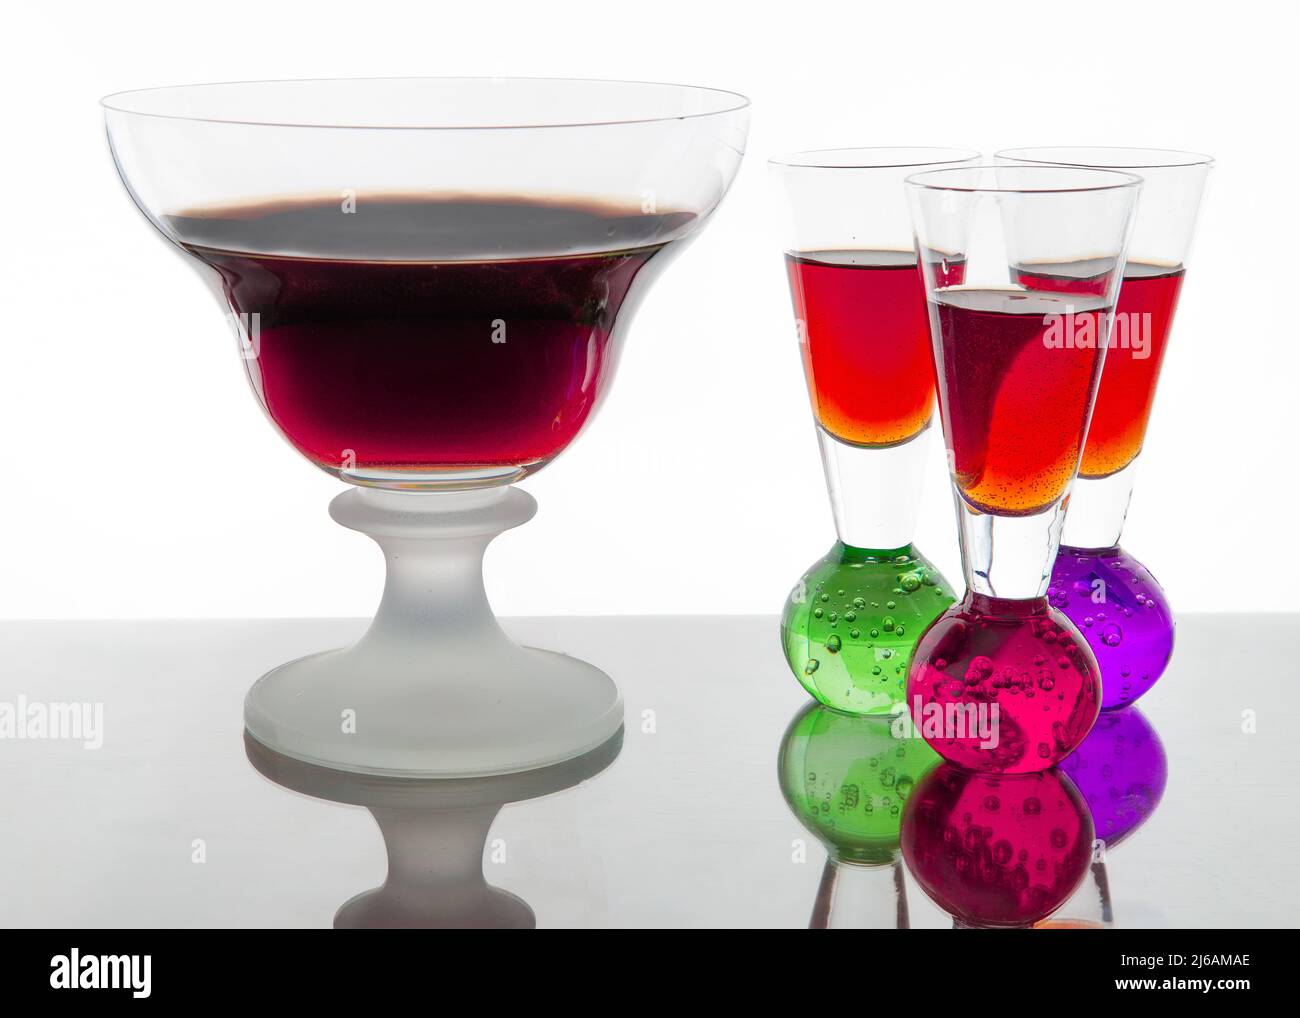 Ponche de alcohol con ron, copas de vodka puede ser una gran decoración para bares y restaurantes. Foto de stock